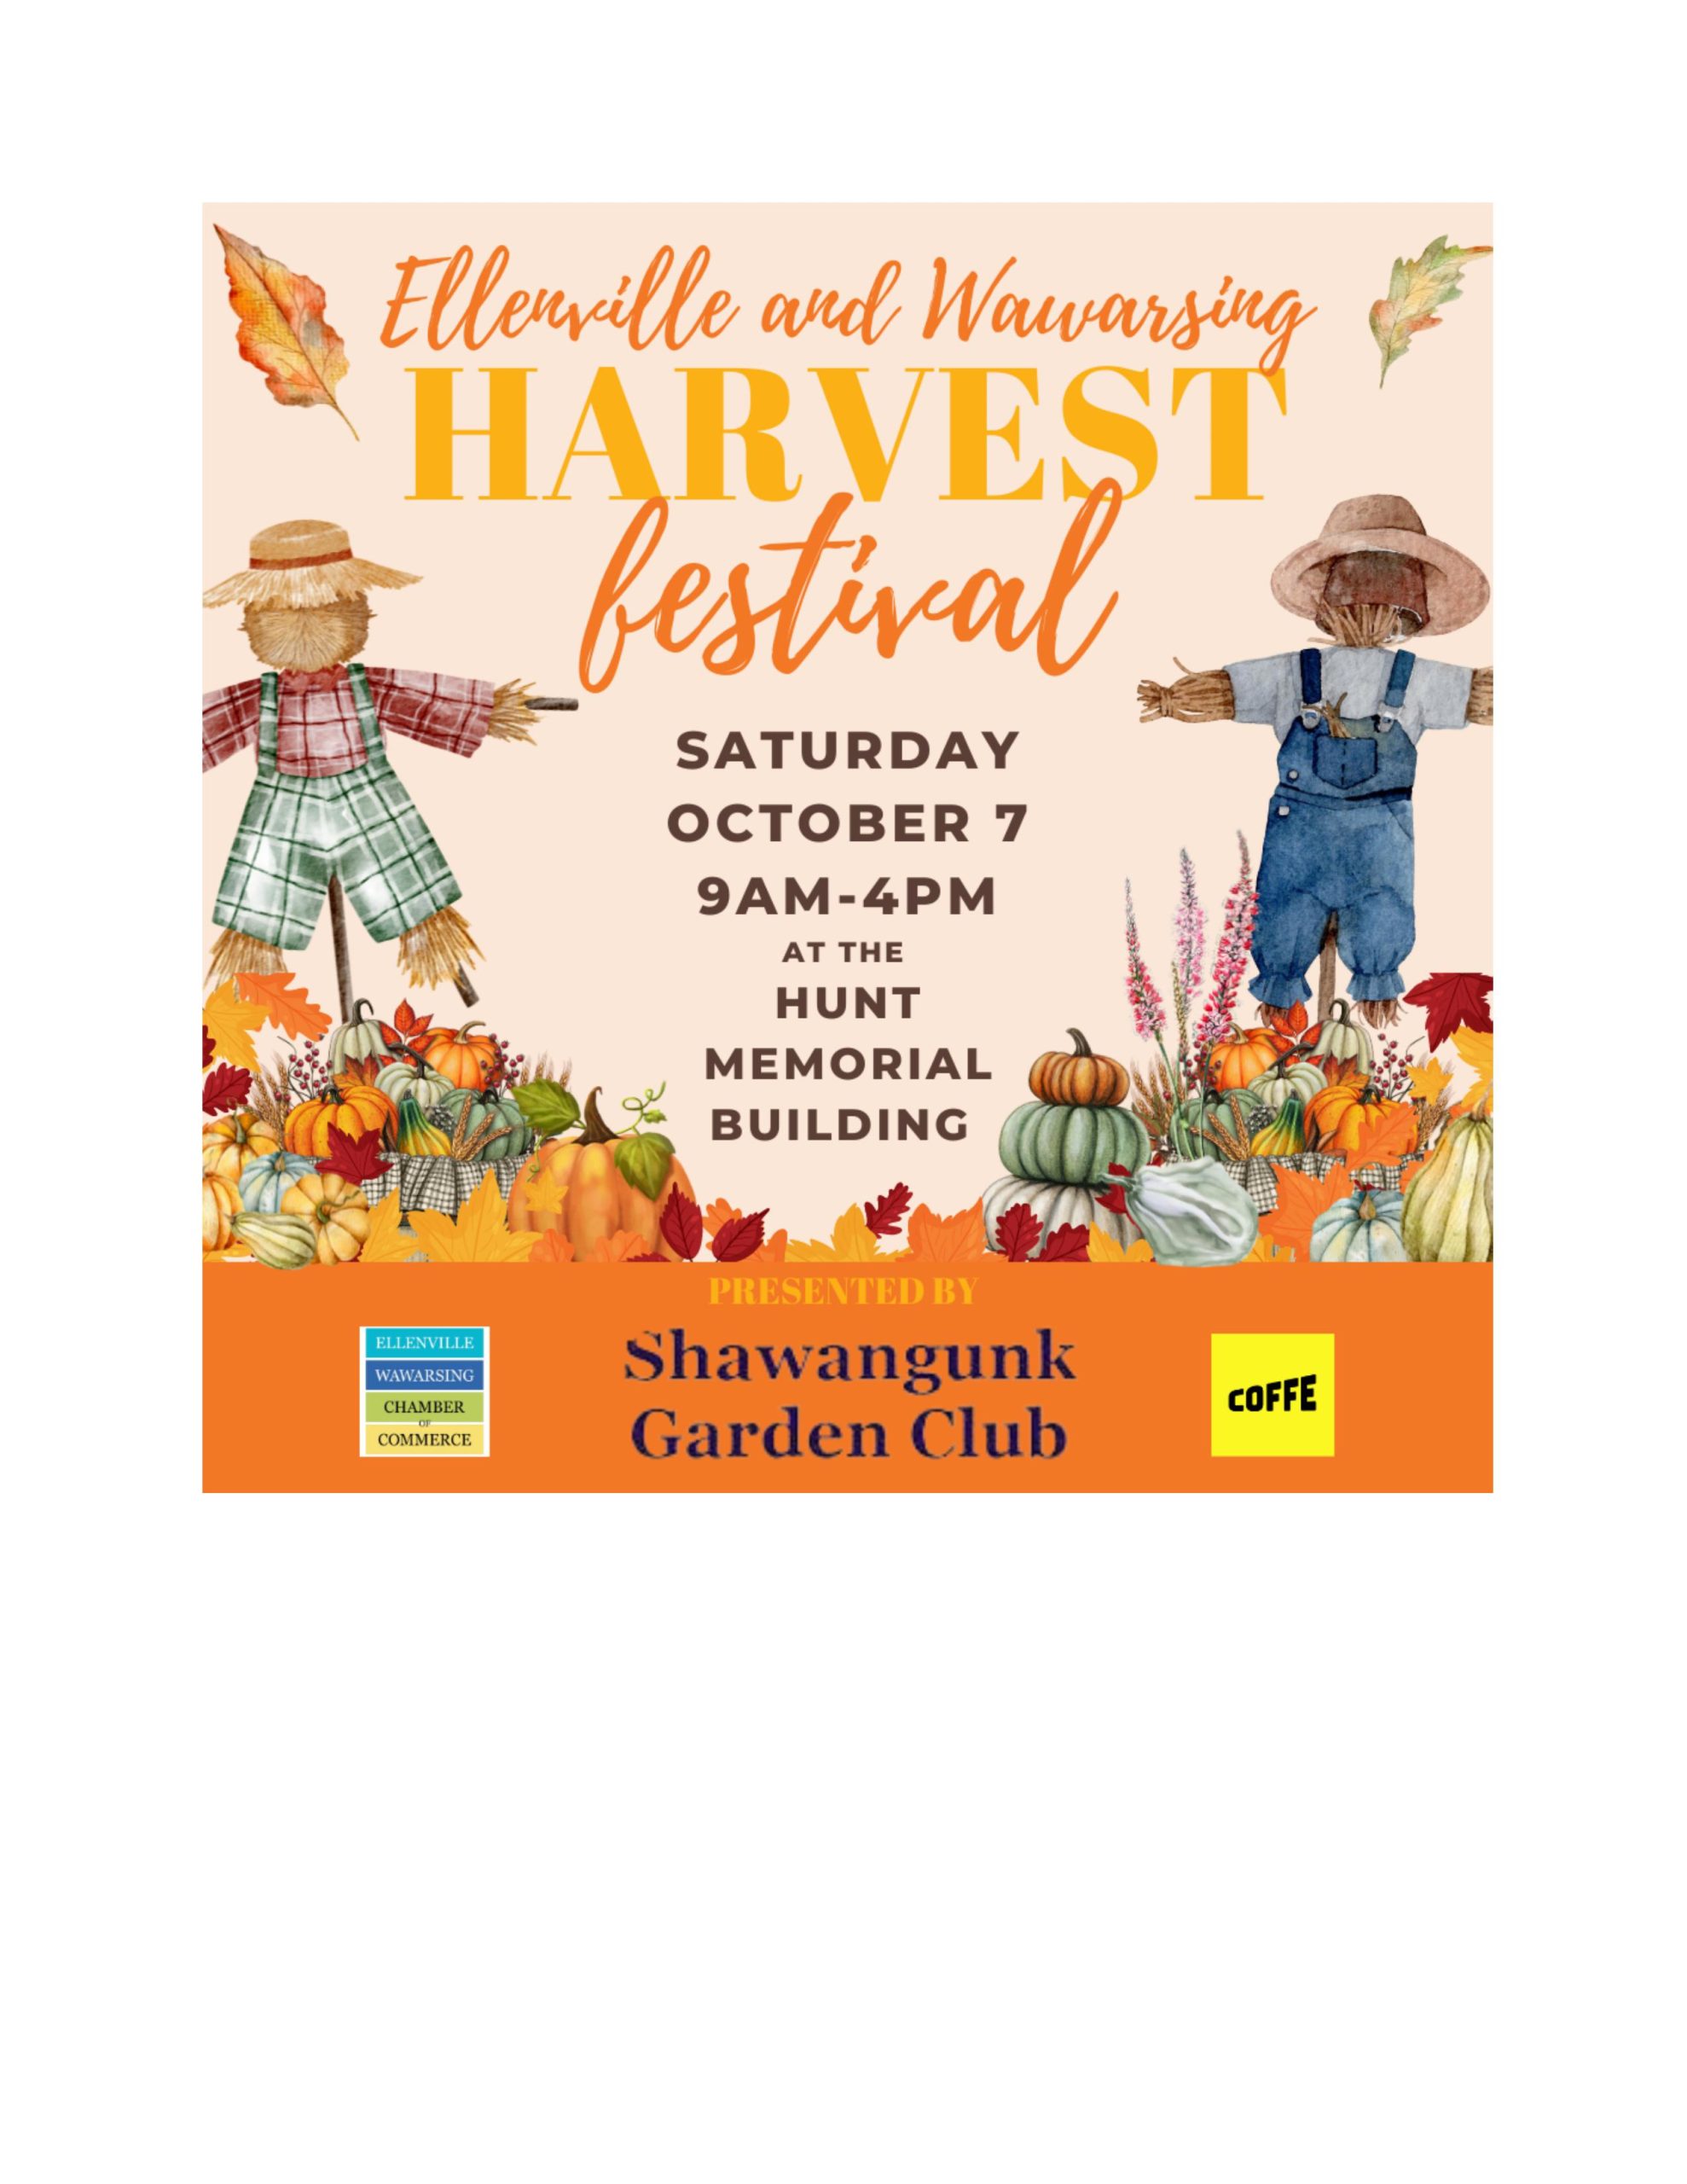 harvest festival event flyer